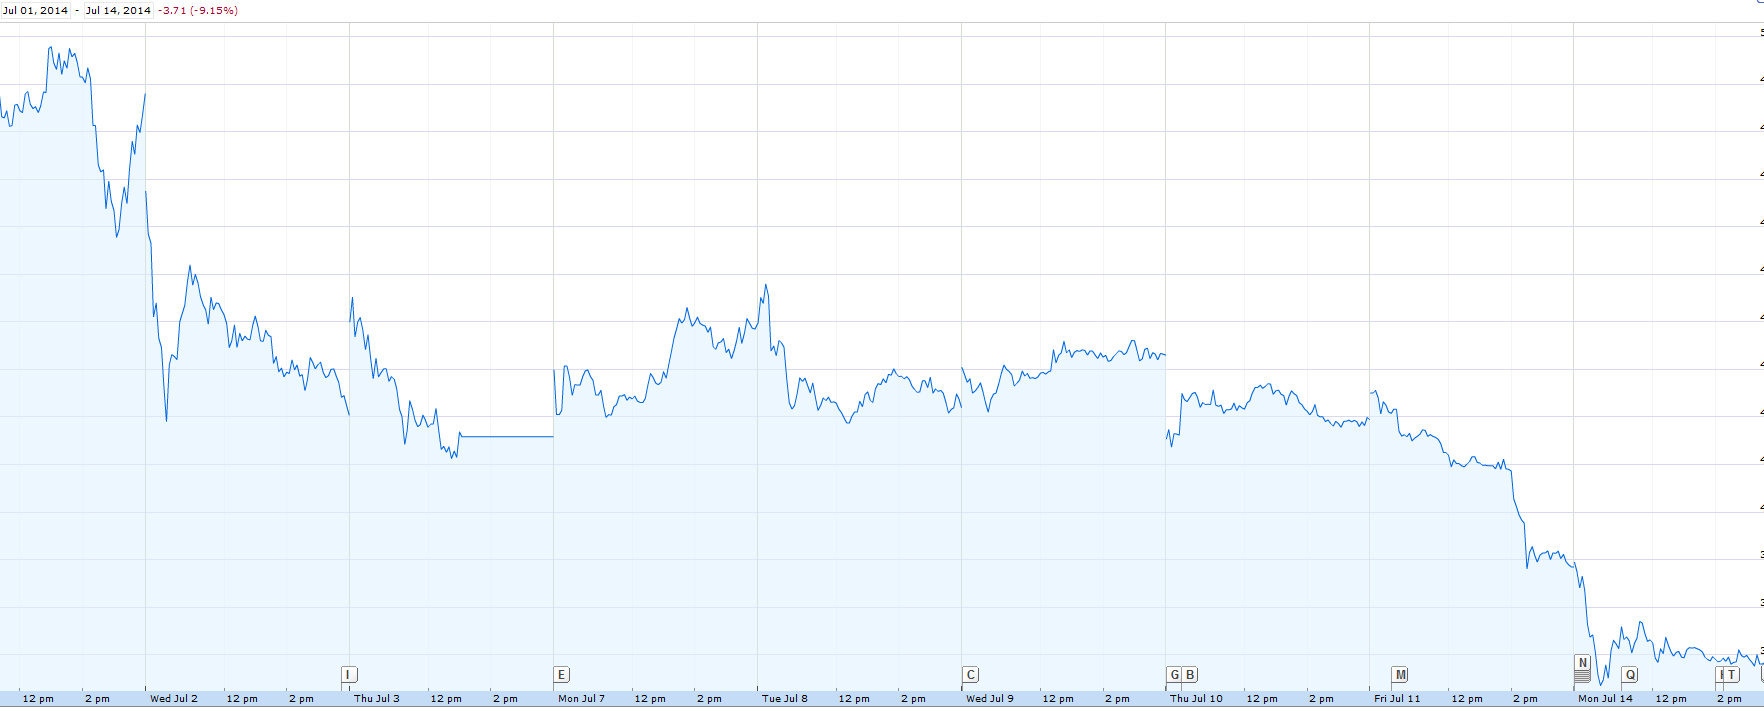 GoPro Stock Price Bubble